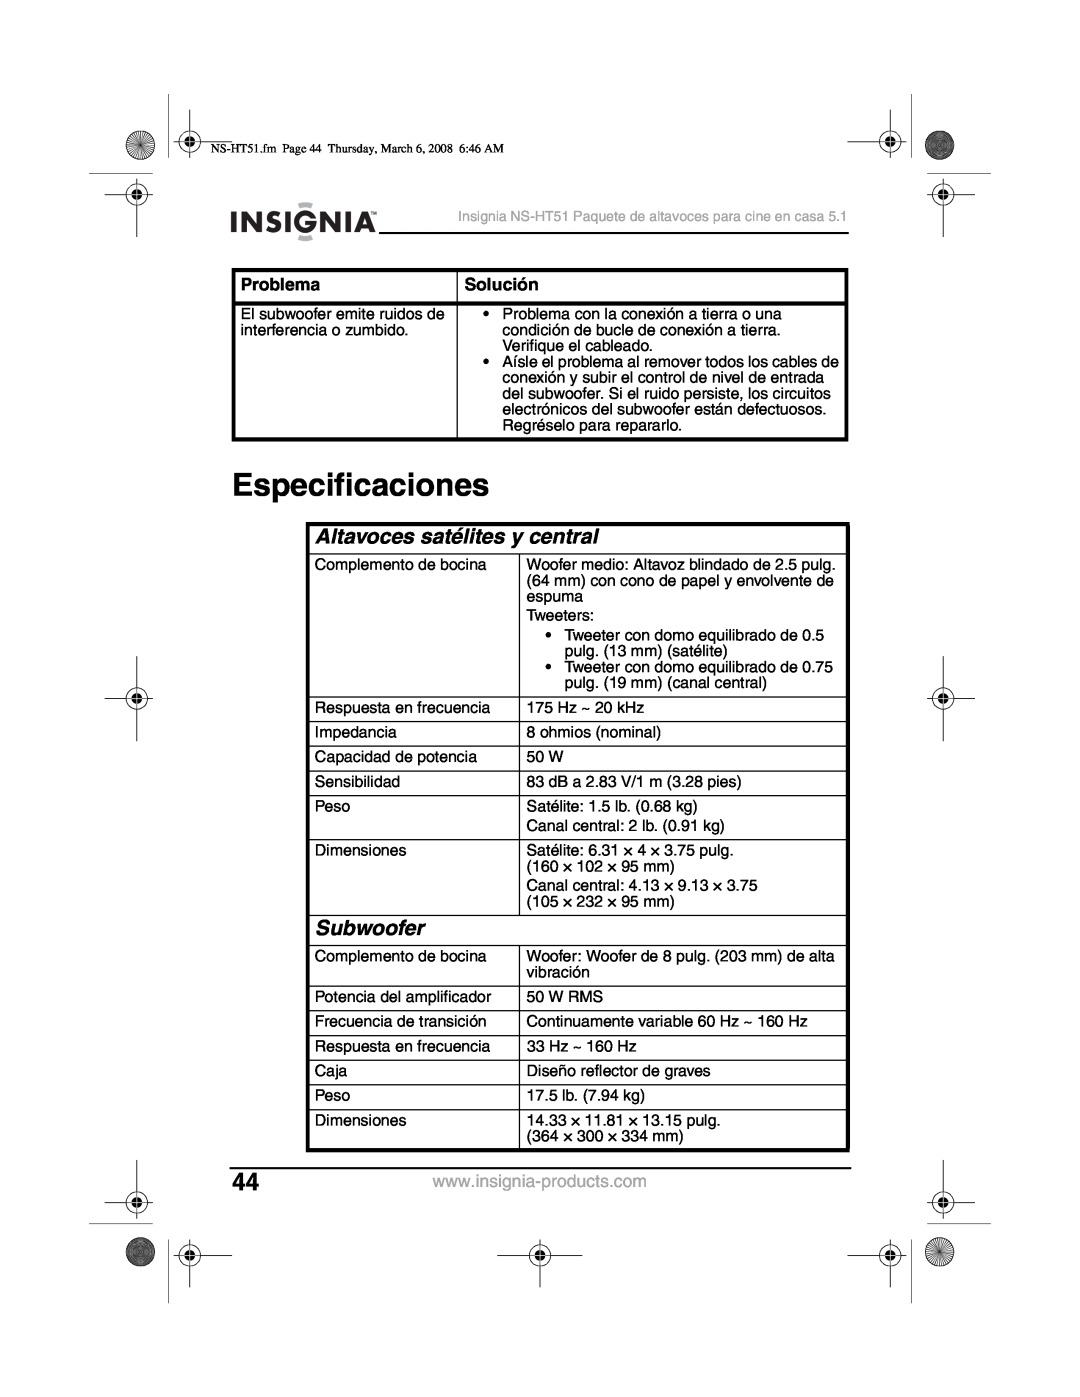 Insignia NS-HT51 manual Especificaciones, Altavoces satélites y central, Subwoofer, Problema, Solución 